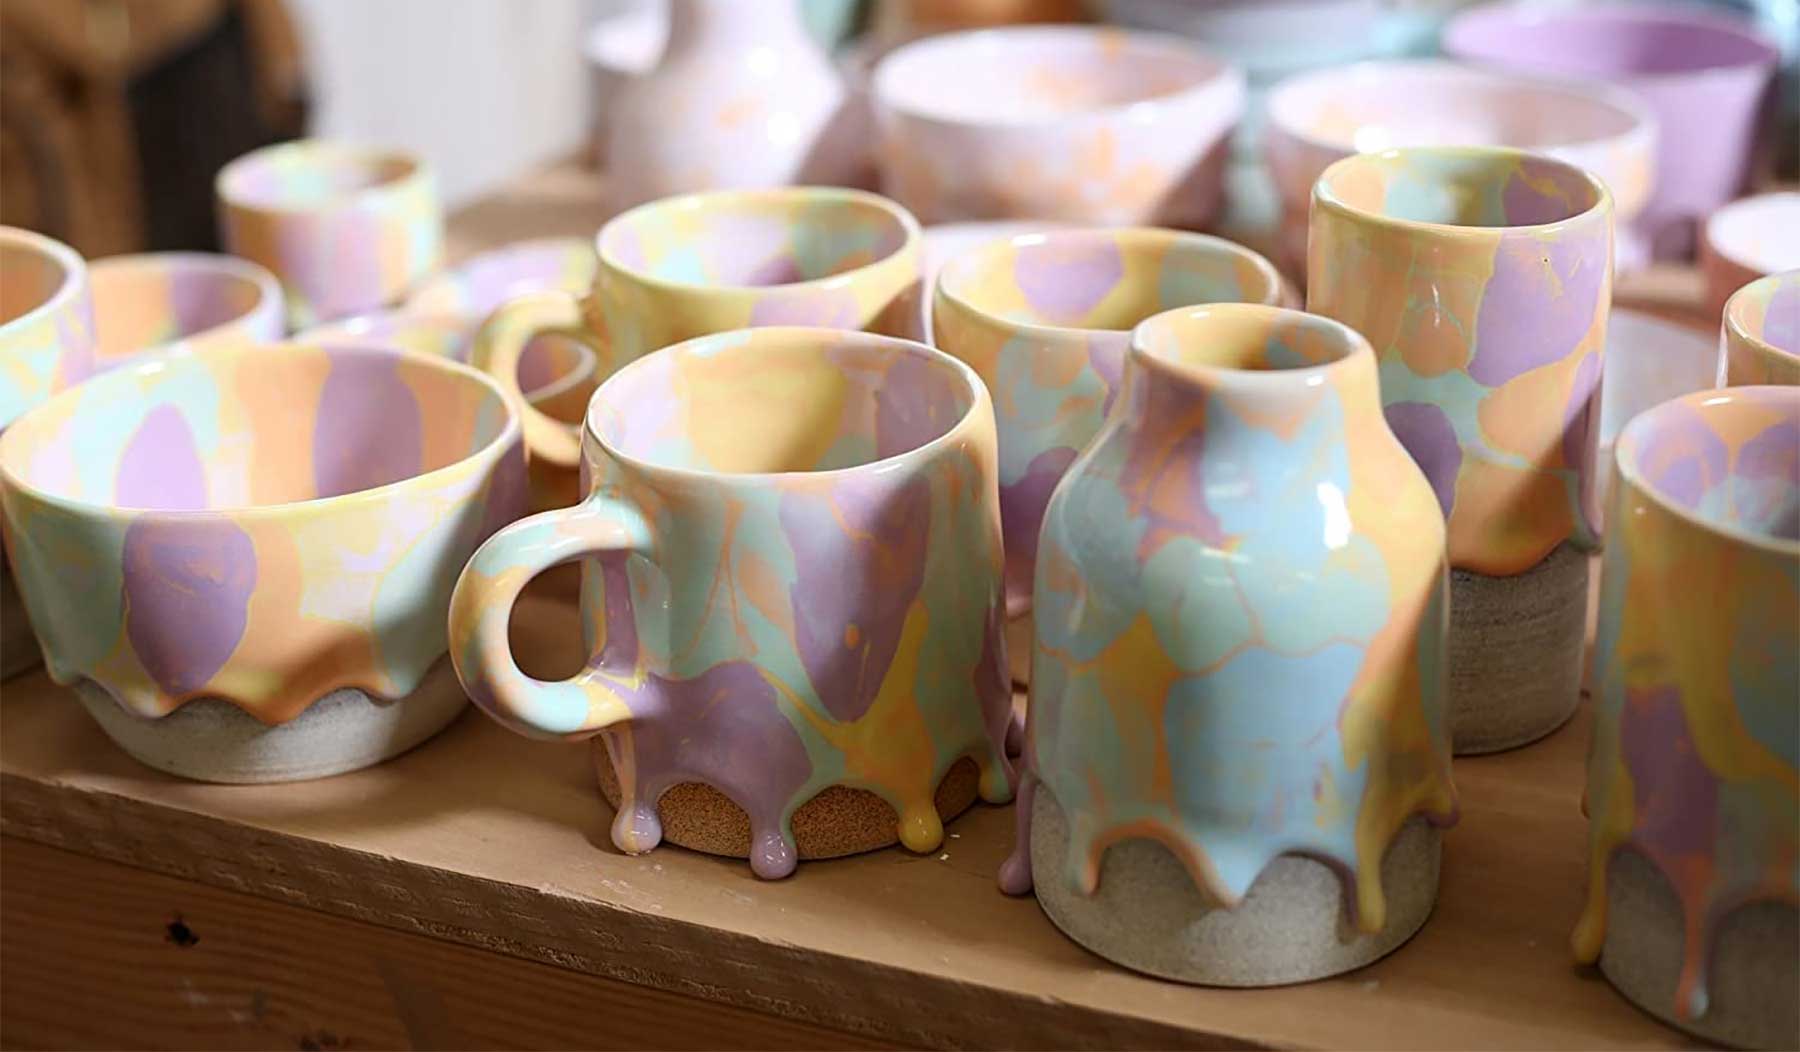 Tassen & Gefäße mit herunter rinnender Farbe Brian-Giniewski-farbtropfentassen-drippy-pots-01 